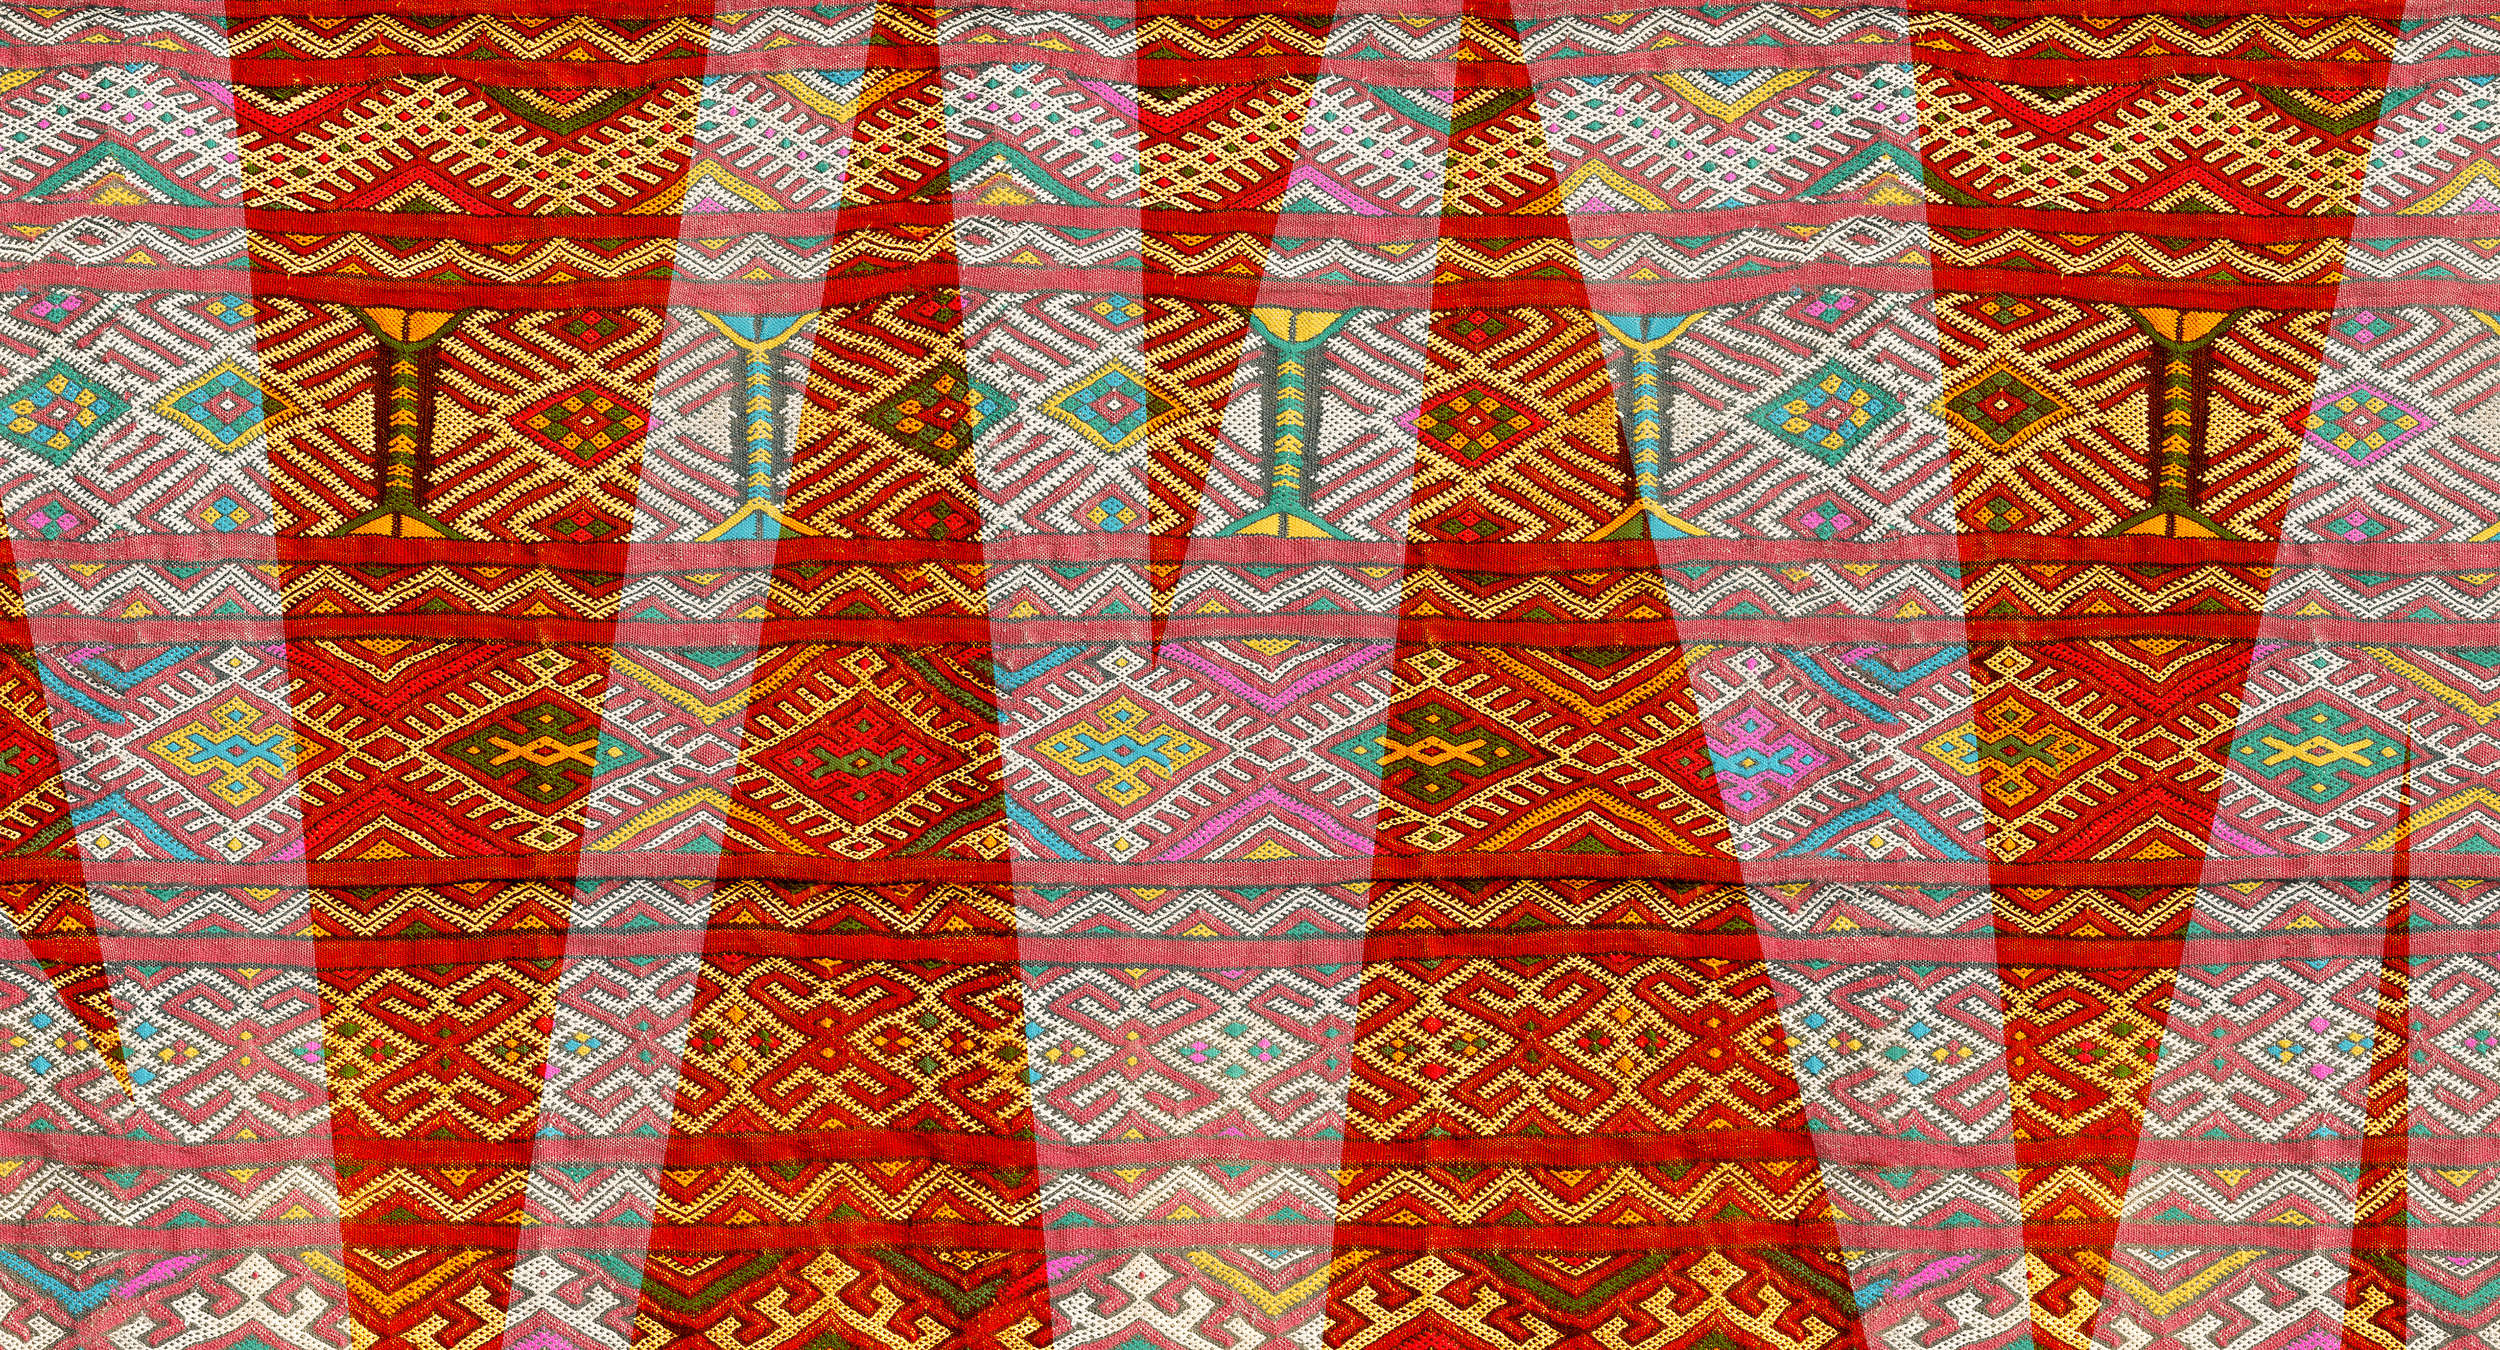             Papier peint ethnique avec design textile & motif tissé - rouge, vert, blanc
        